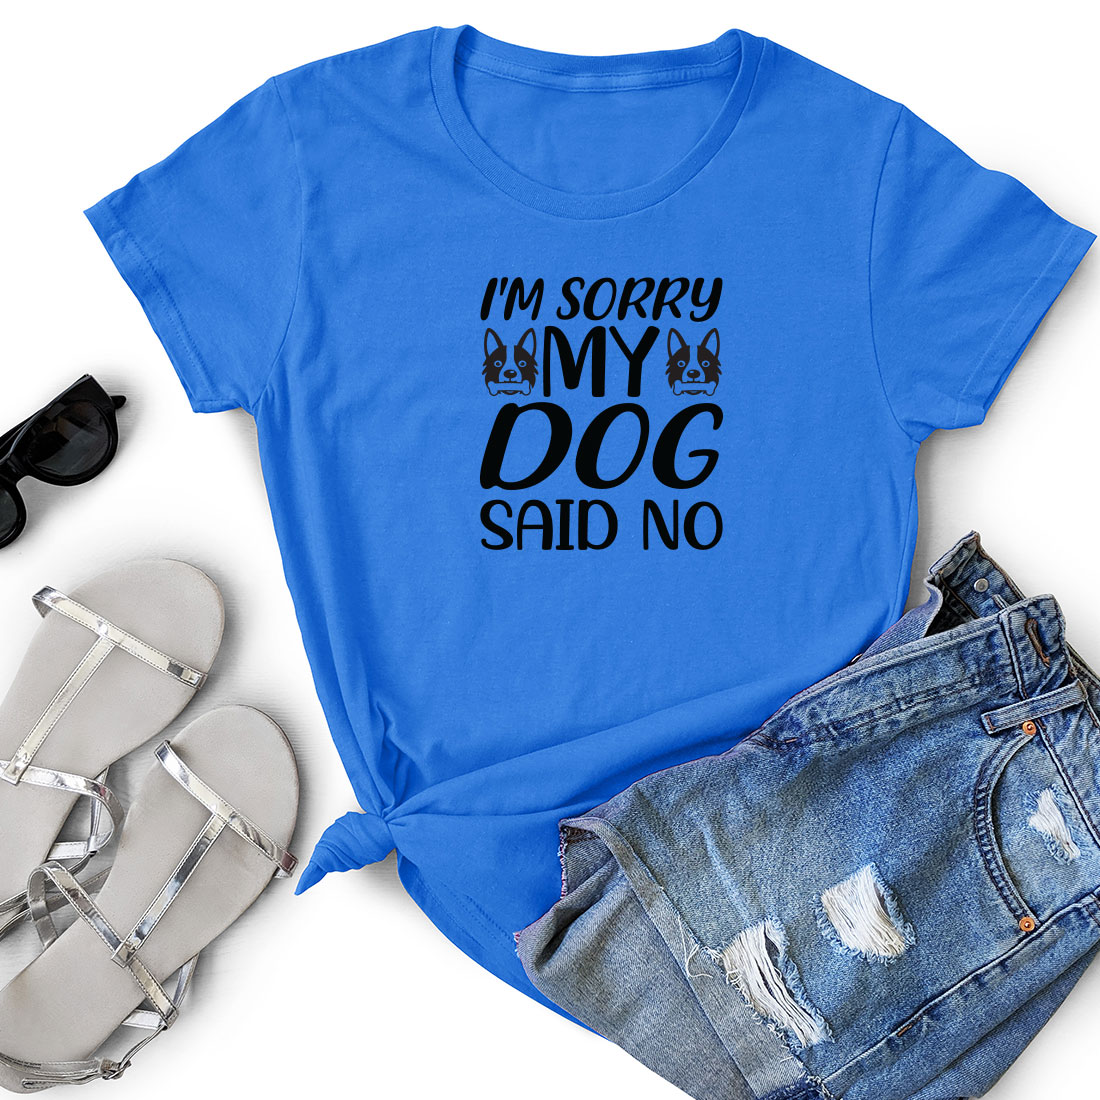 T - shirt that says i'm sorry my dog said no.